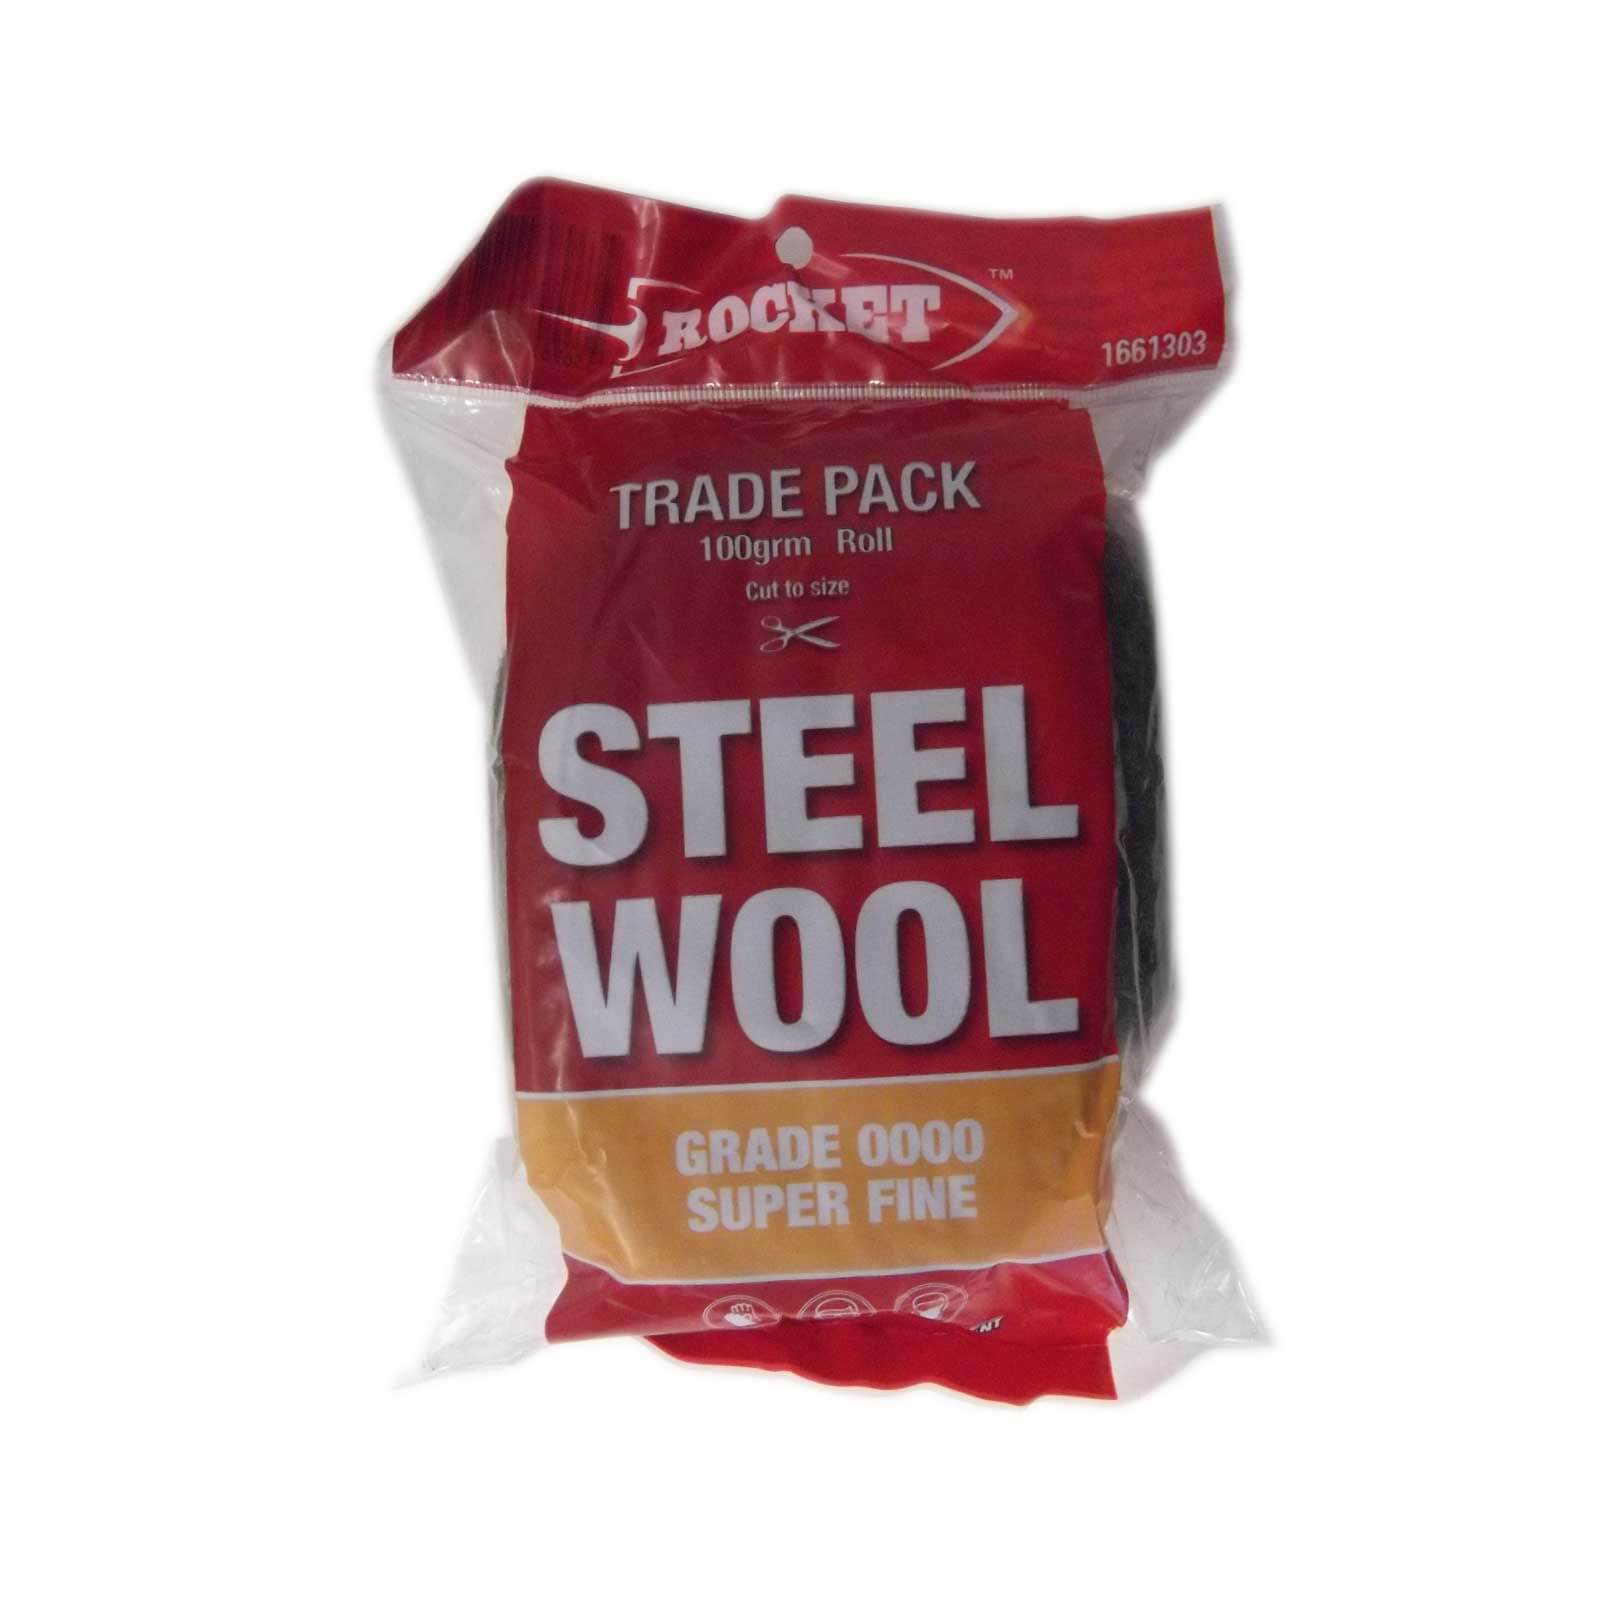 Rocket Steel Wool - 100g Grade 0000 Super Fine